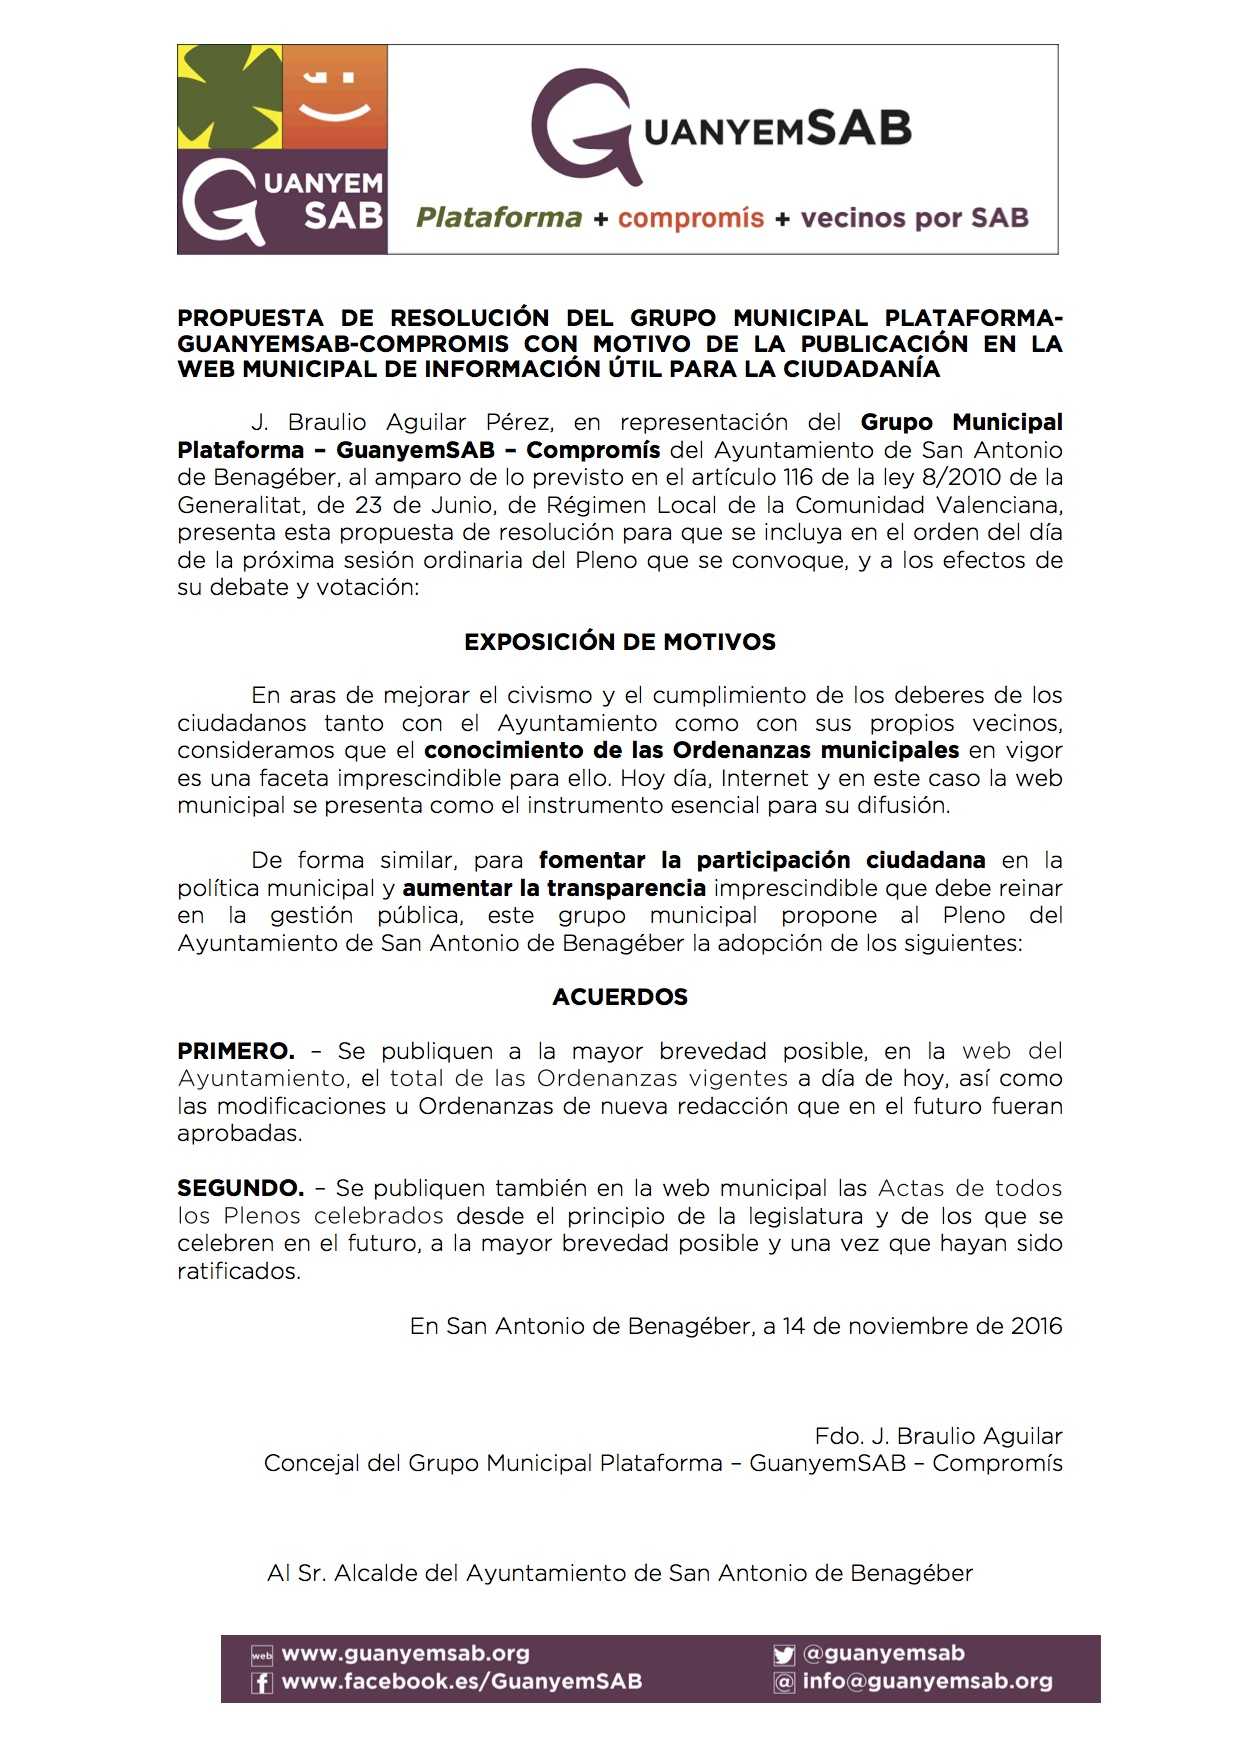 01-mocion-propuesta-publicacion-ordenanzas-y-actas-plenos-en-web